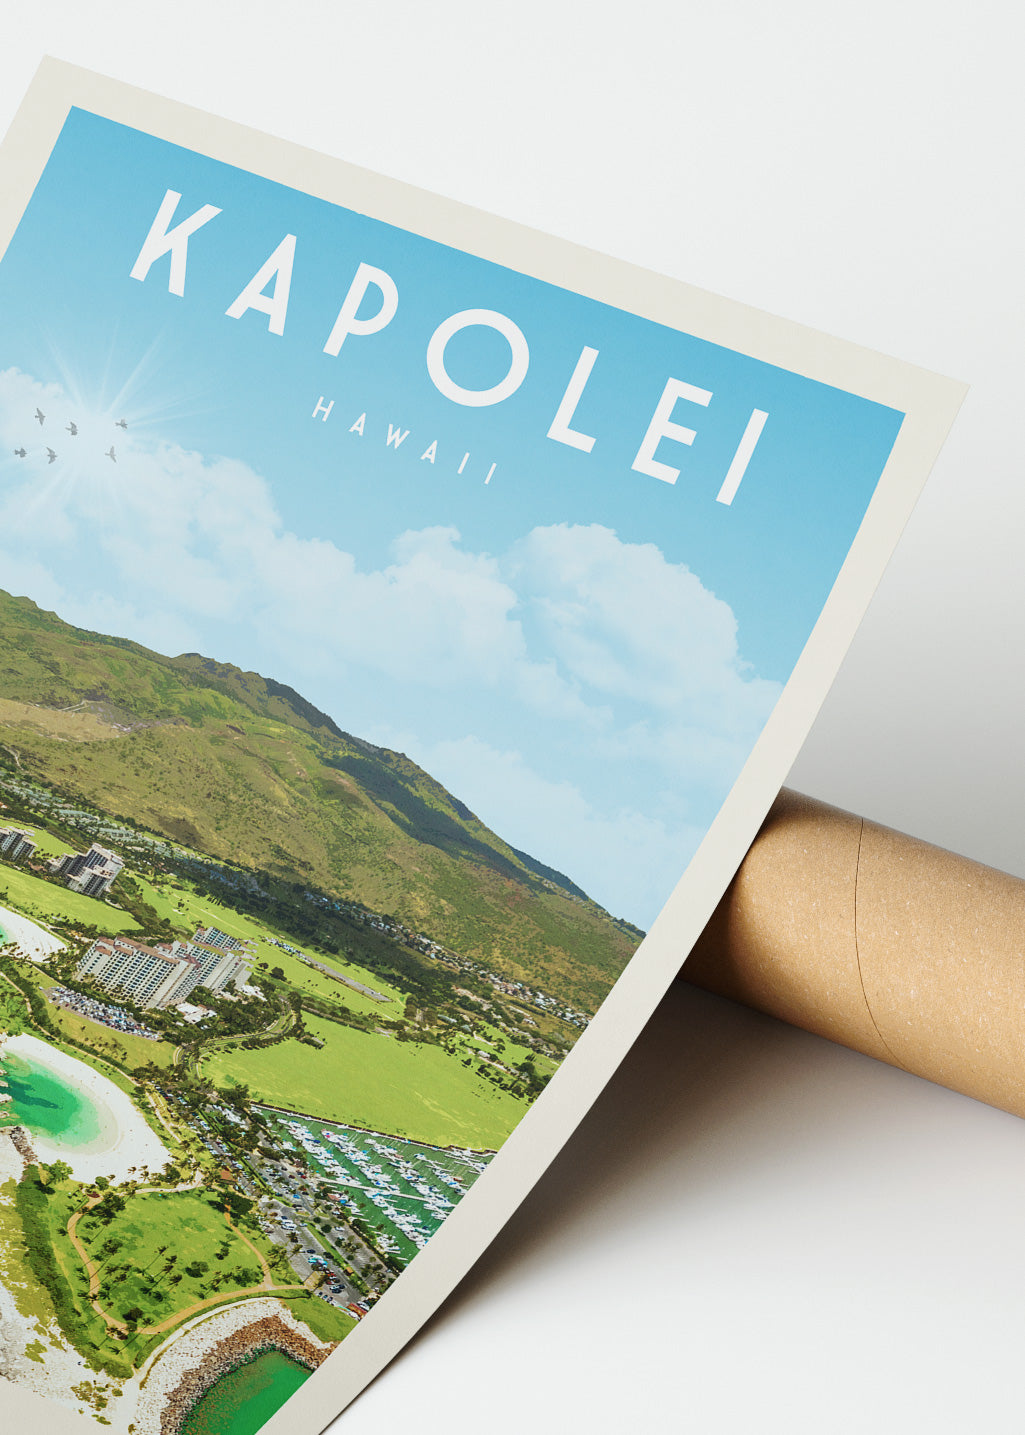 Kapolei, Hawaii - Vintage Travel Poster